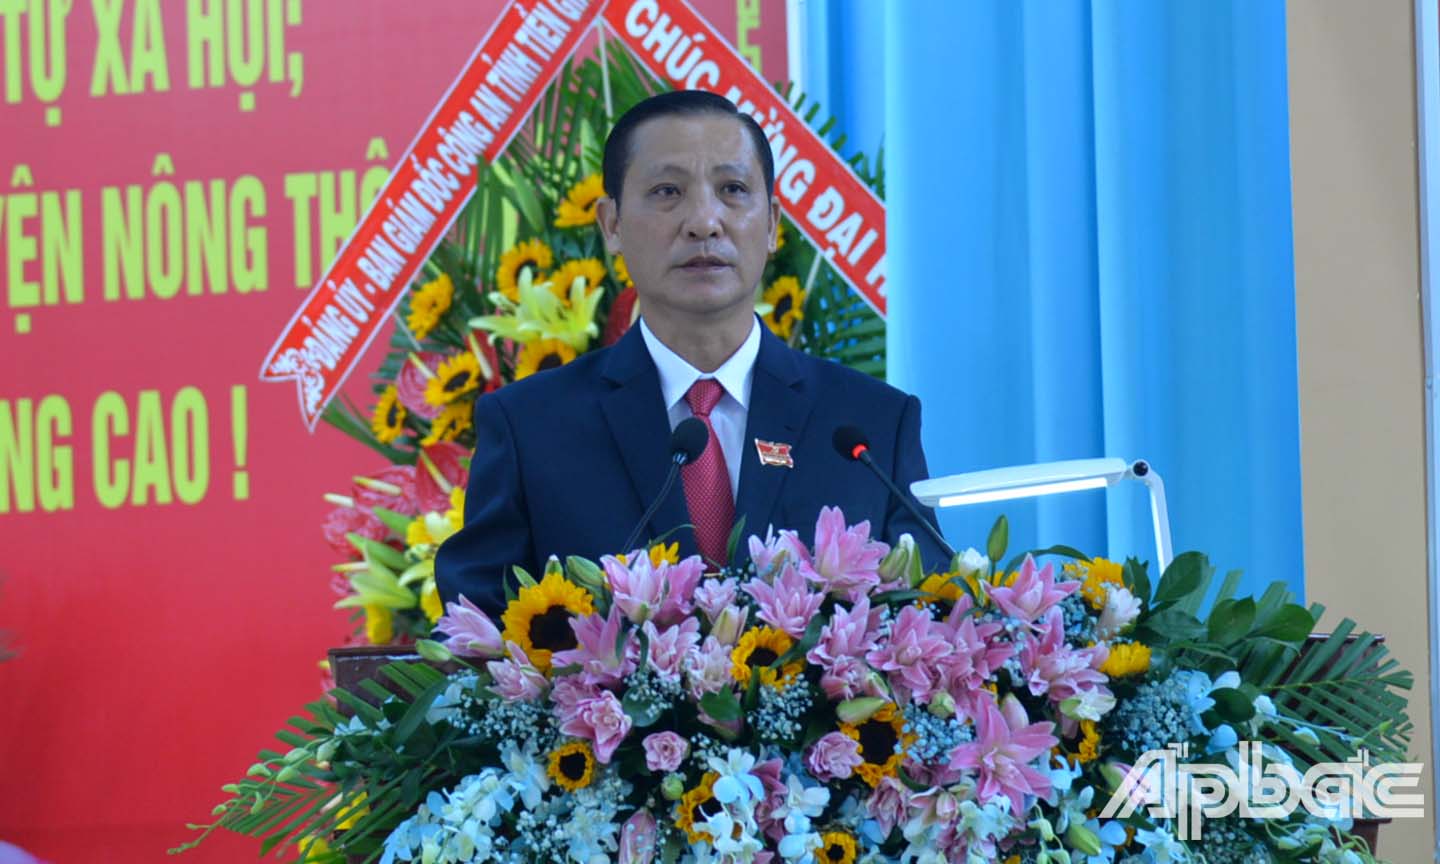 Đồng chí Ngô Hữu Thệ phát biểu khai mạc Đại hội.